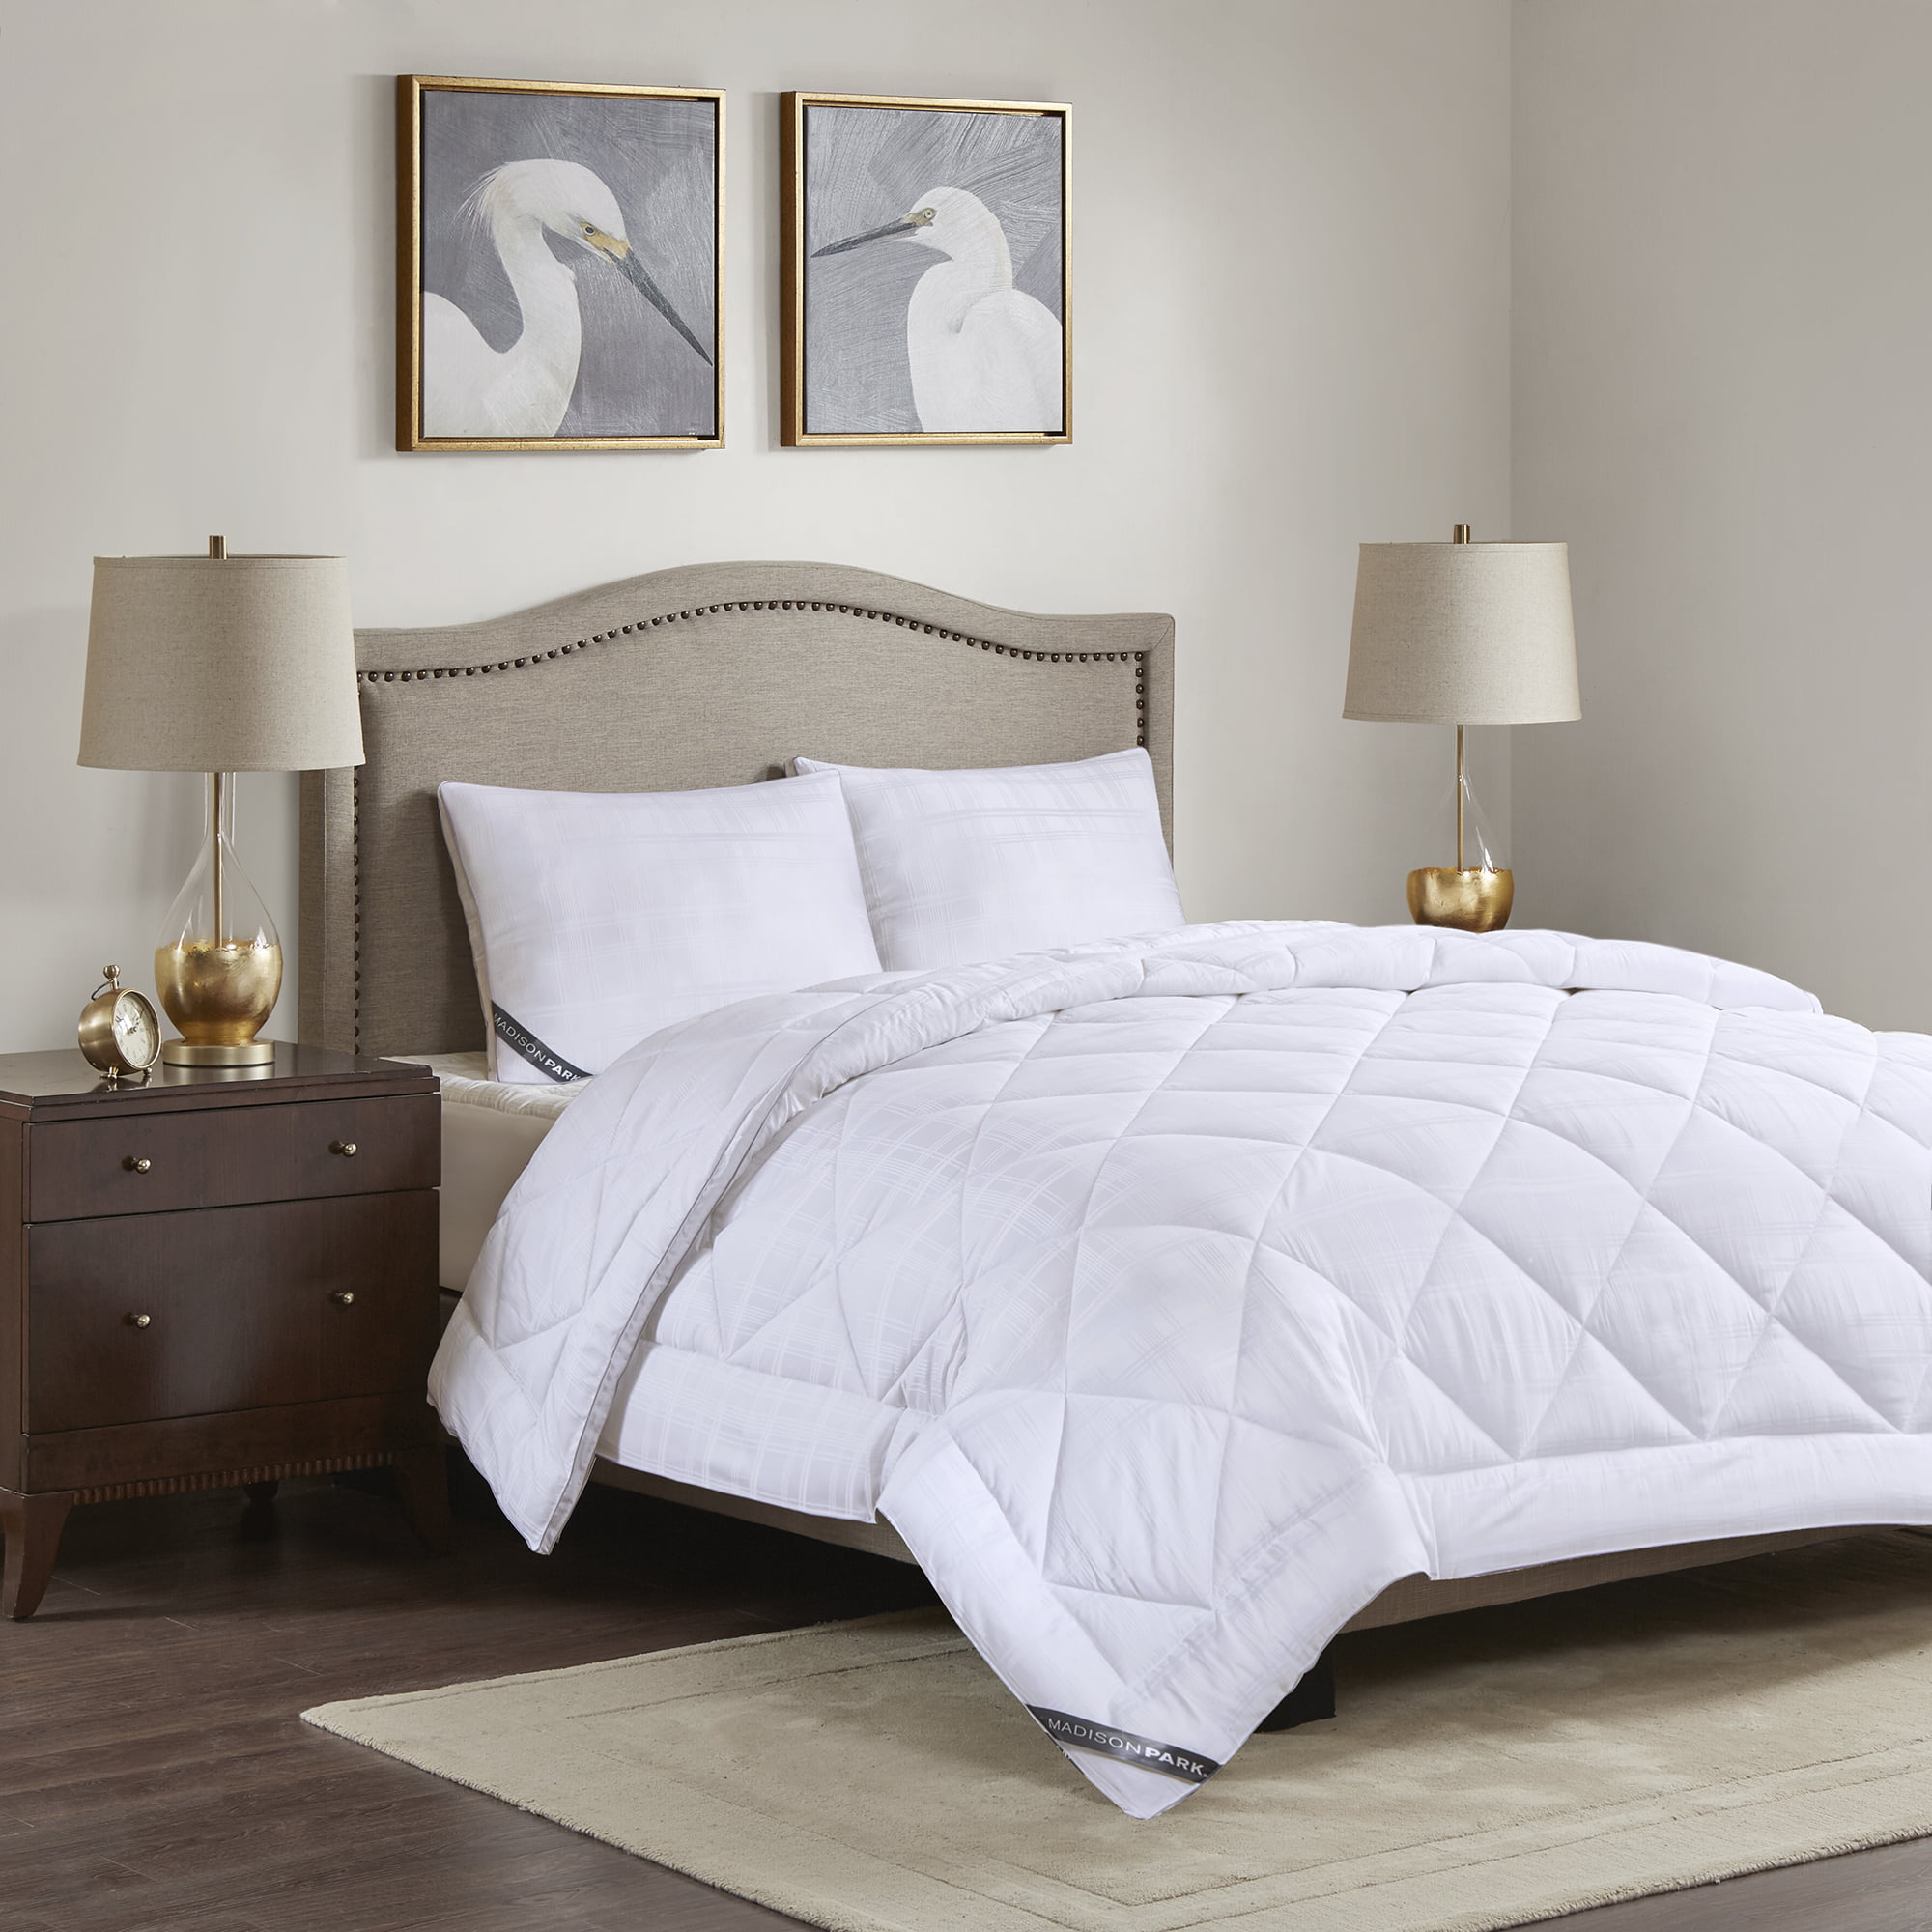 30A Comfort Luxurious Down Alternative Double-Fill Comforter Duvet Insert Twin 